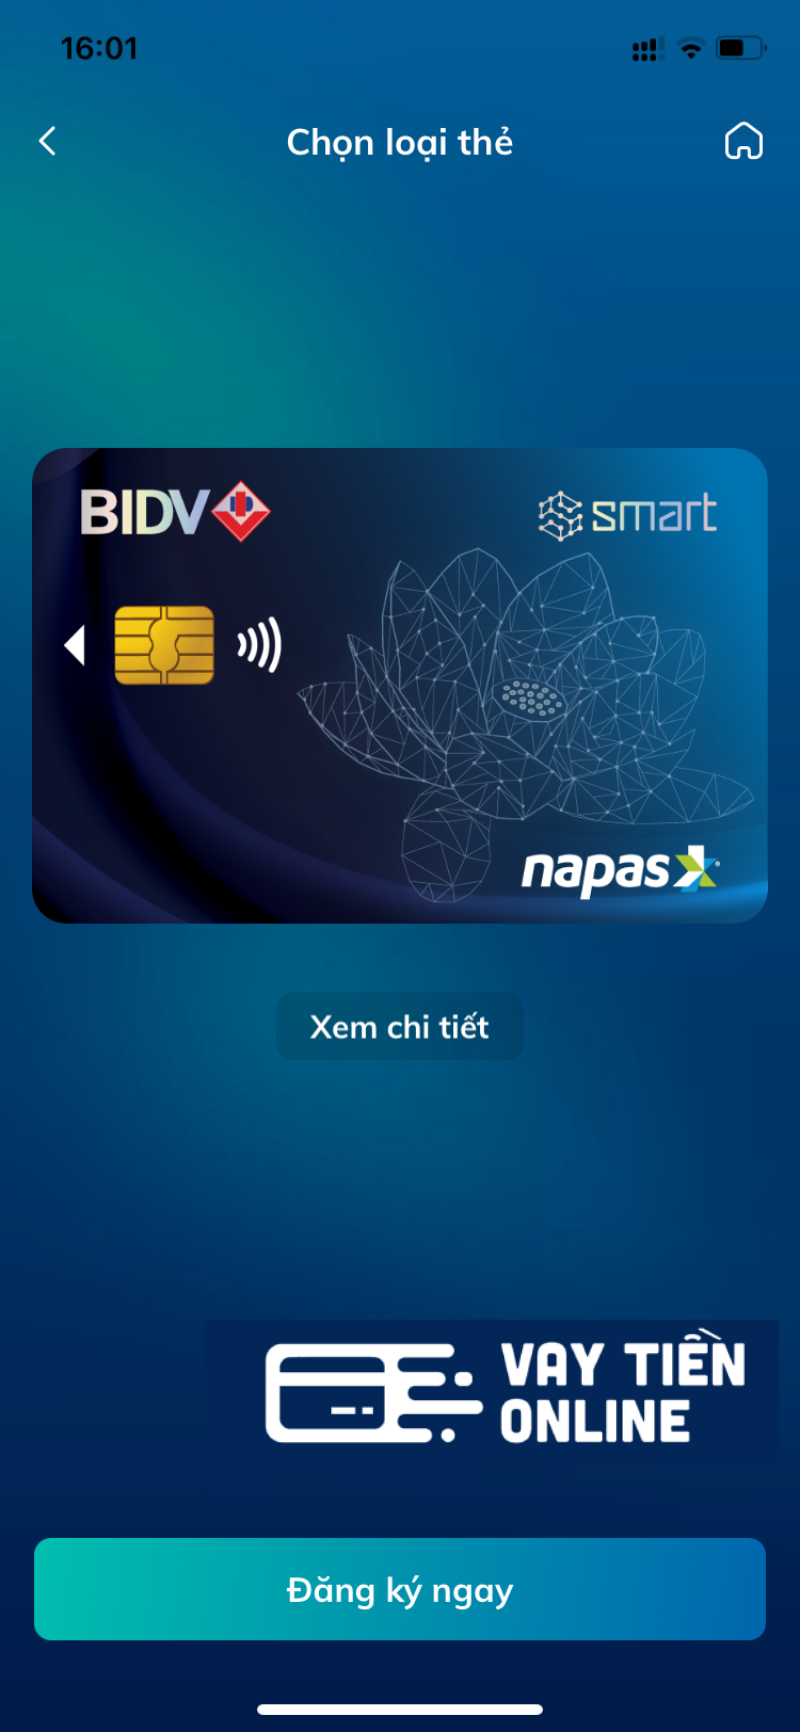 Lam the BIDV online qua app 4